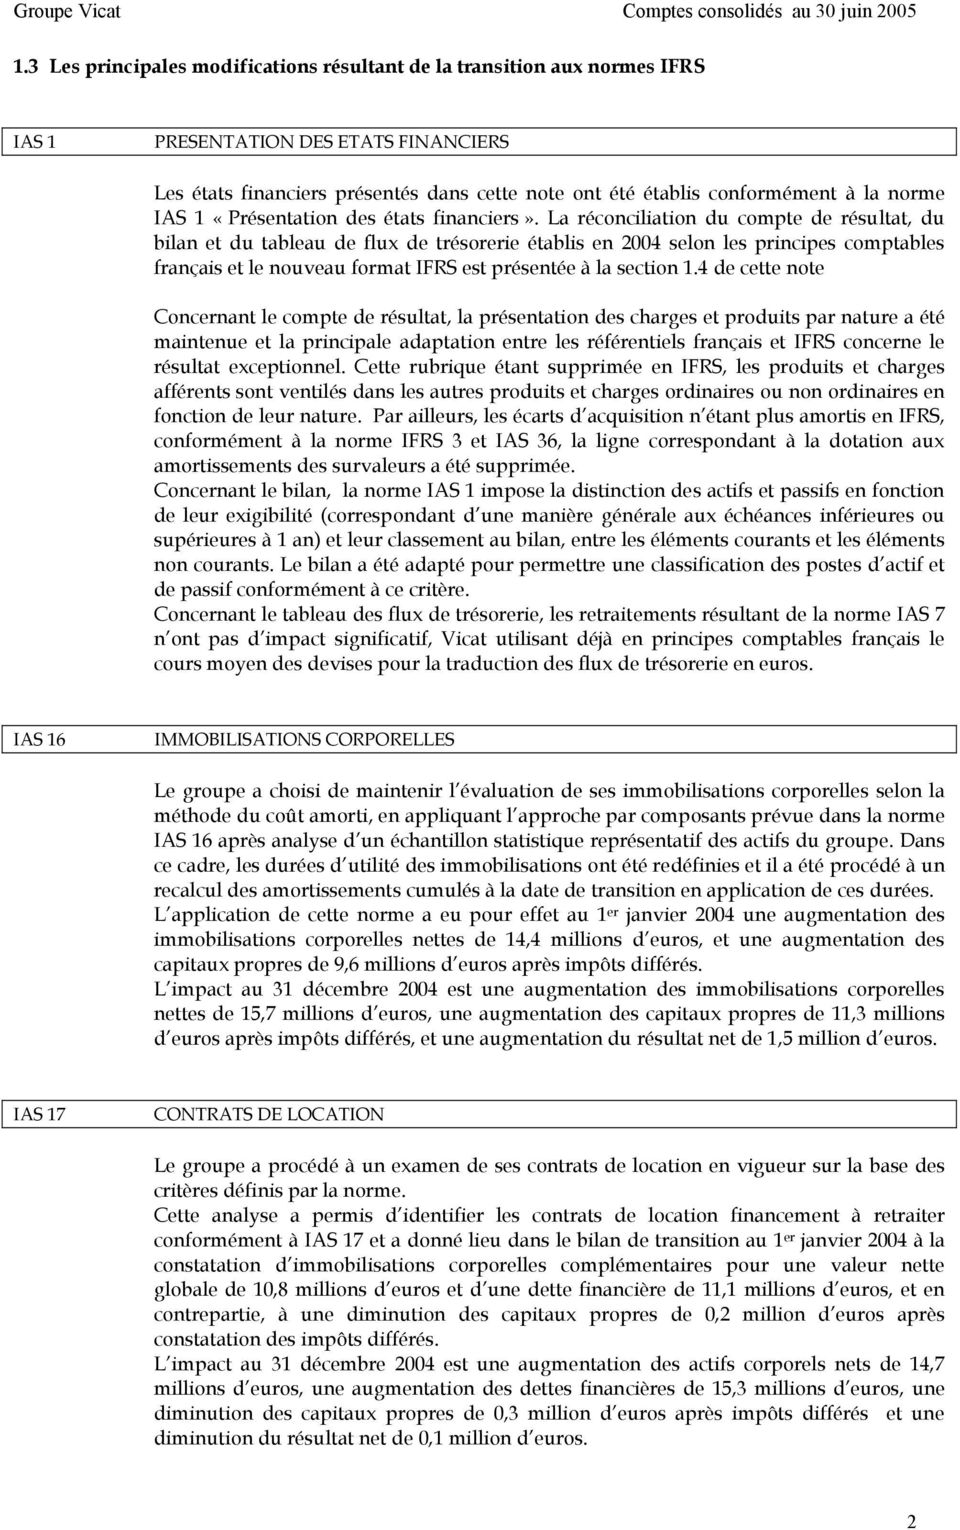 La réconciliation du compte de résultat, du bilan et du tableau de flux de trésorerie établis en 2004 selon les principes comptables français et le nouveau format IFRS est présentée à la section 1.